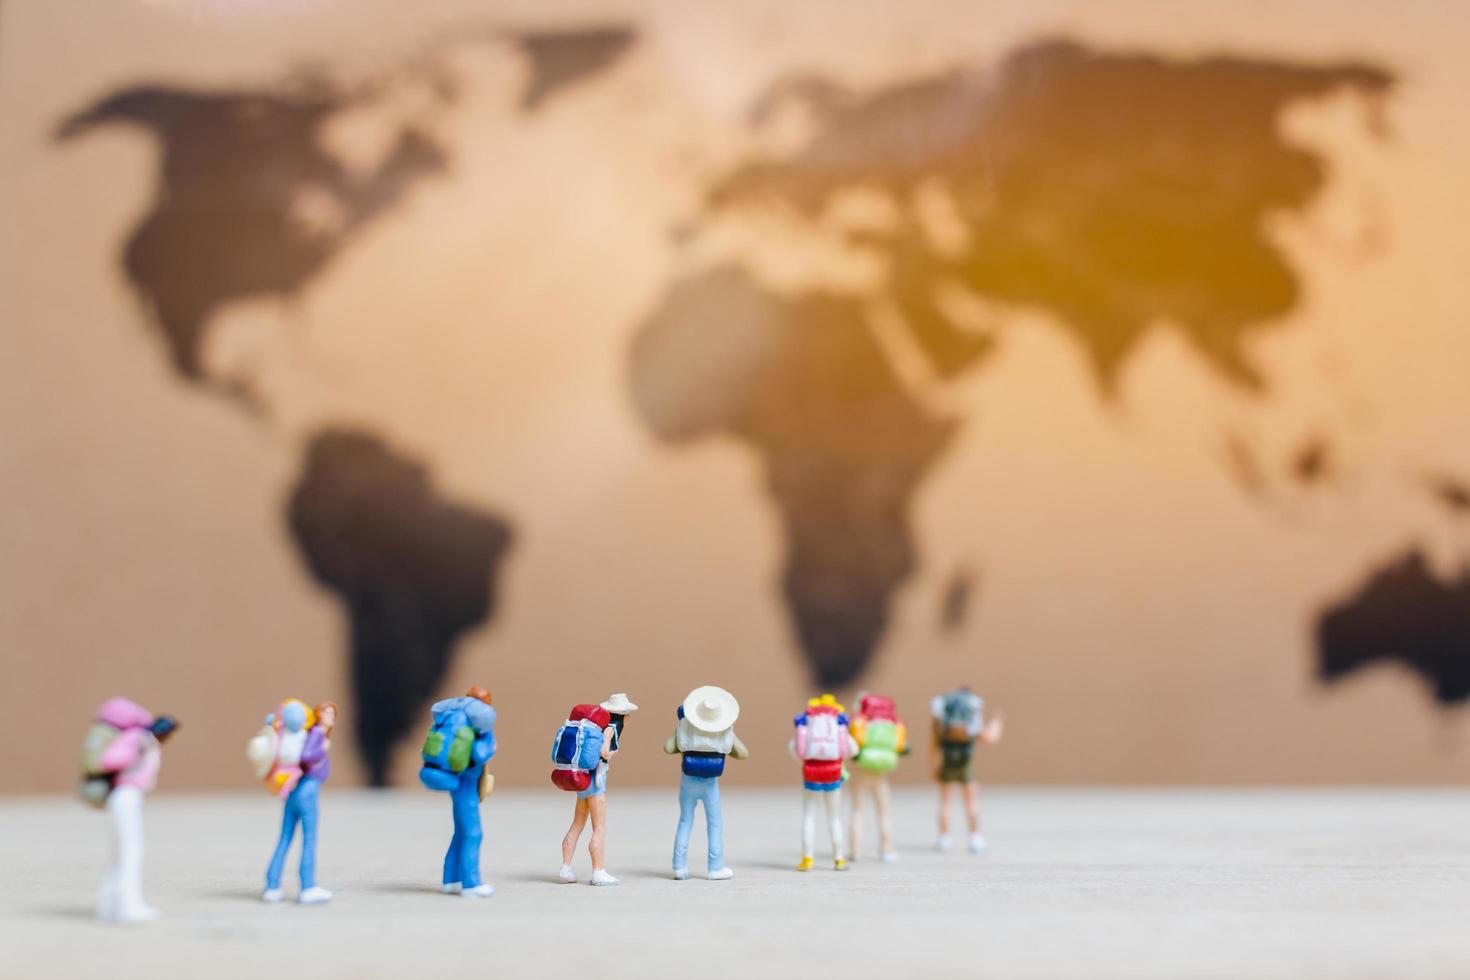 Miniaturreisende, die auf einer Weltkarte spazieren gehen, reisen und das Weltkonzept erkunden foto